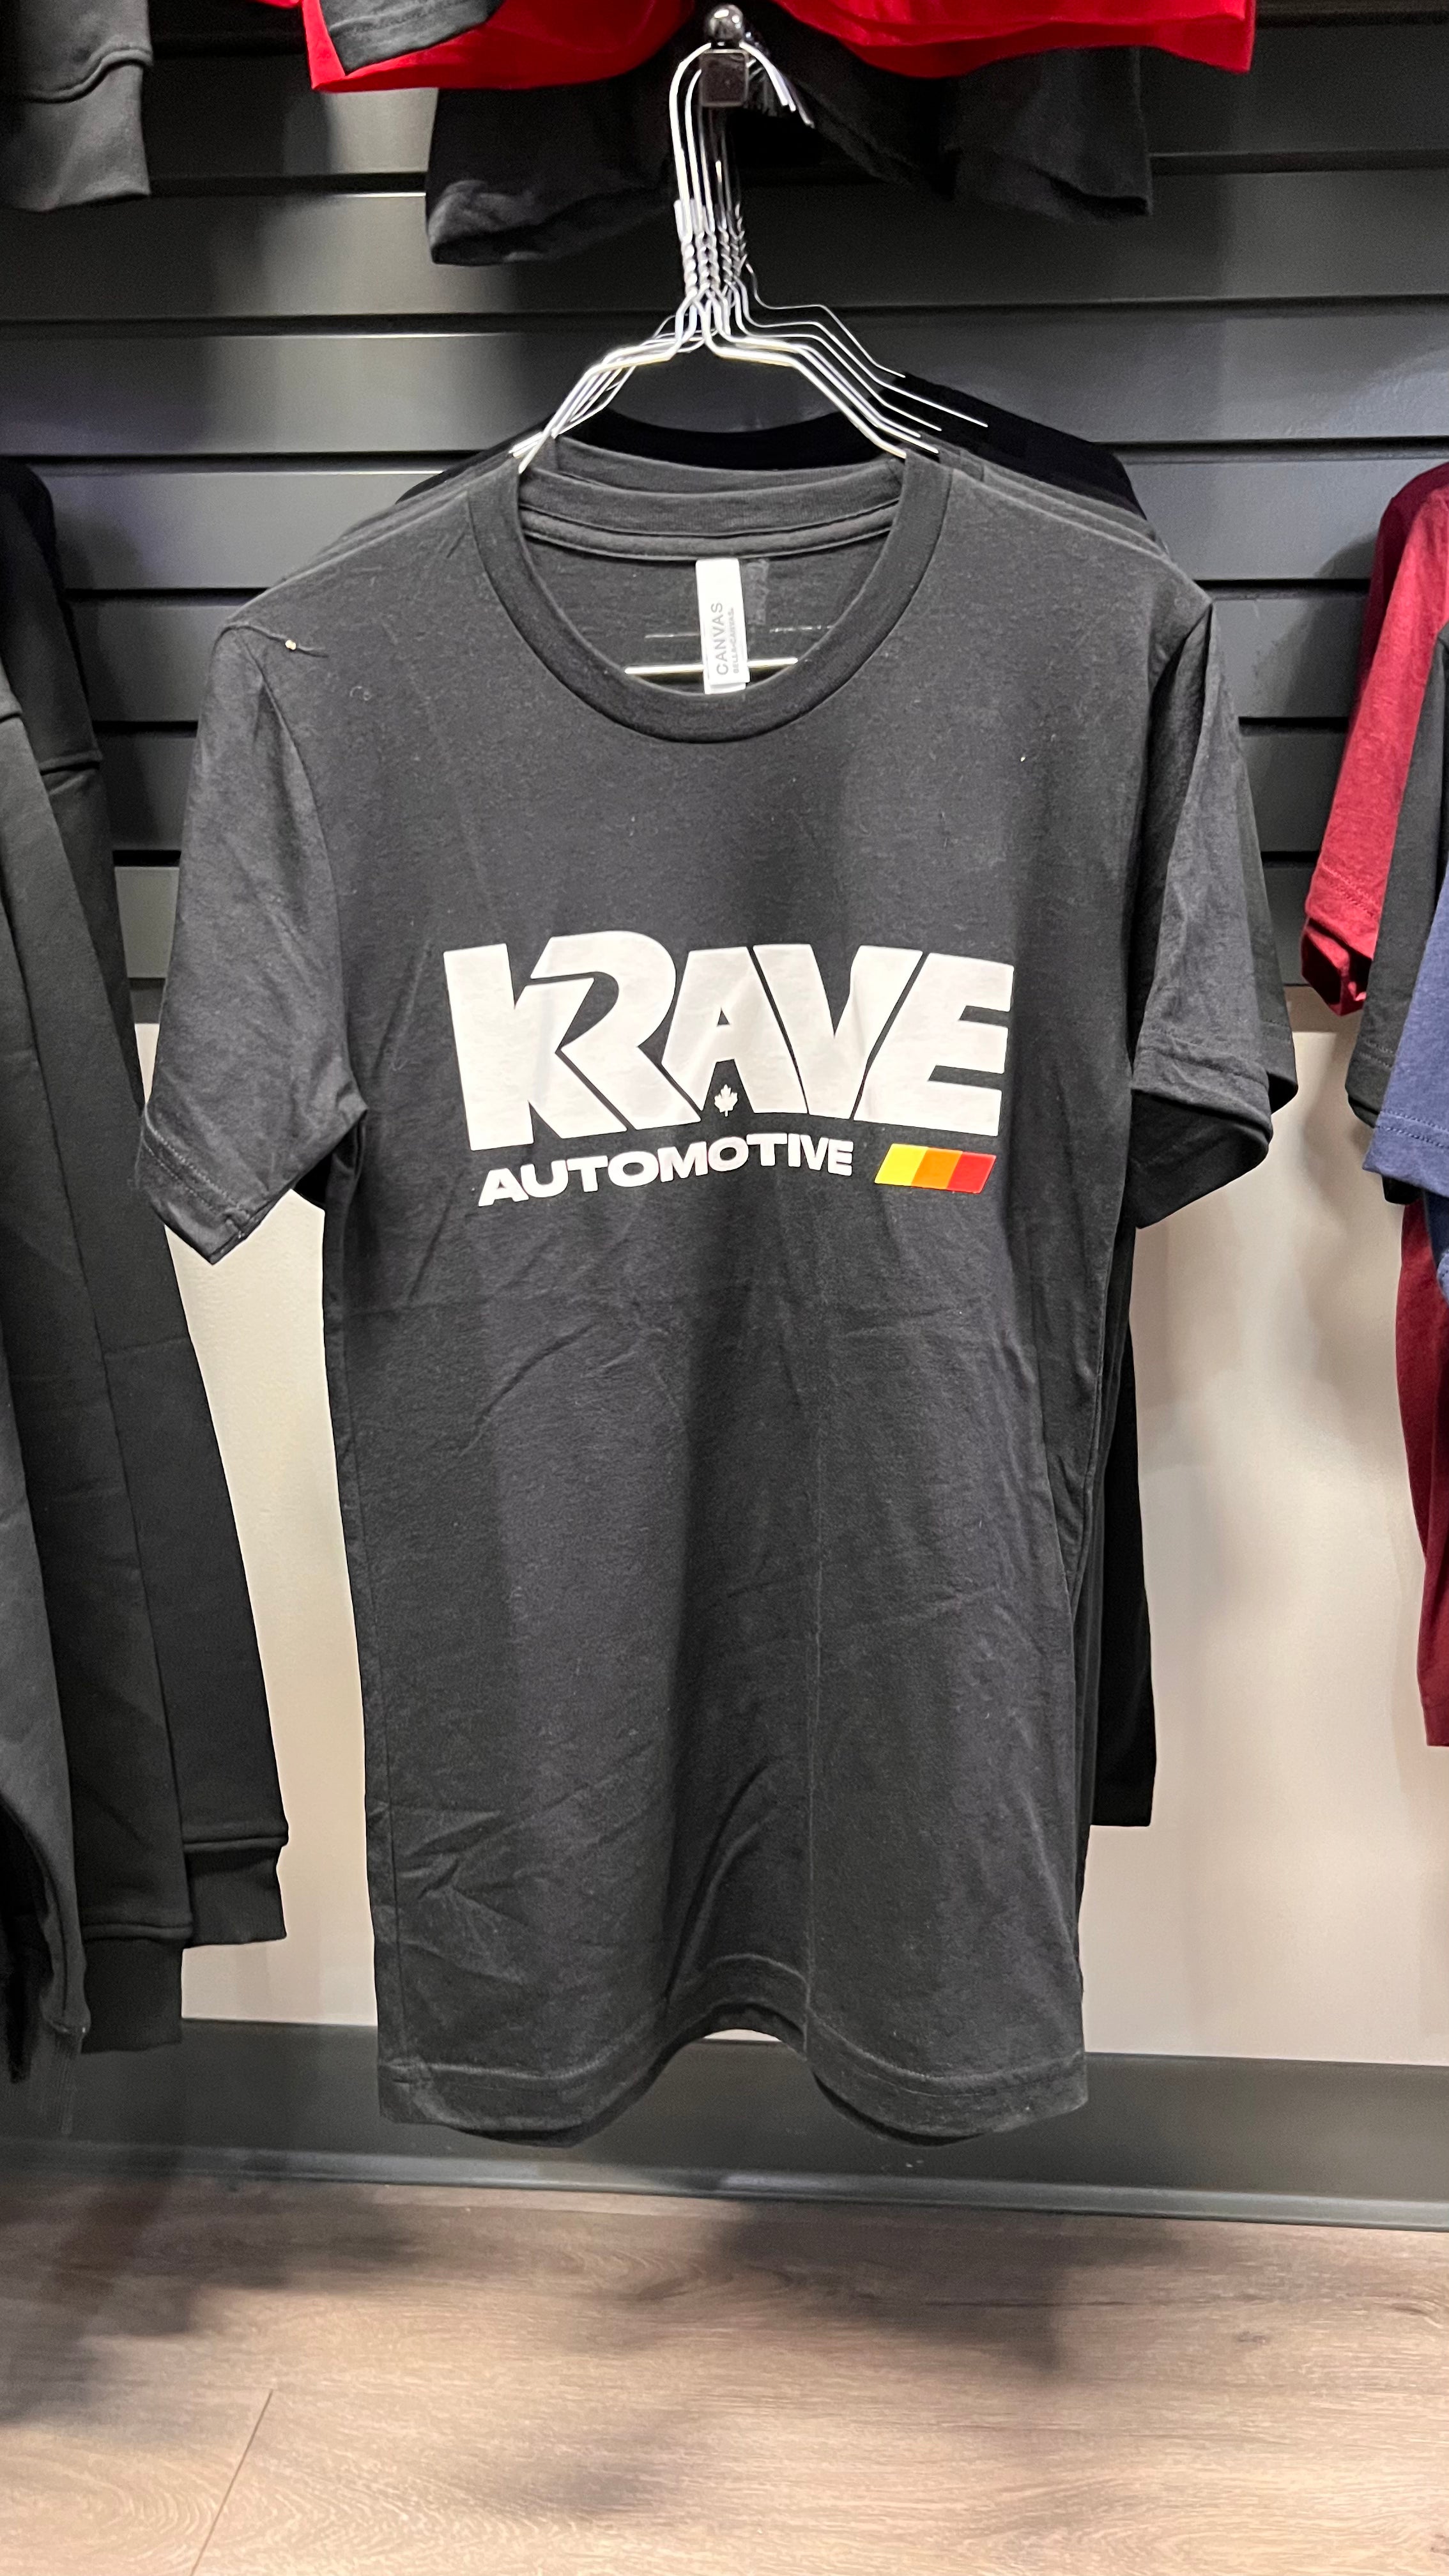 KRave Automotive T-Shirt